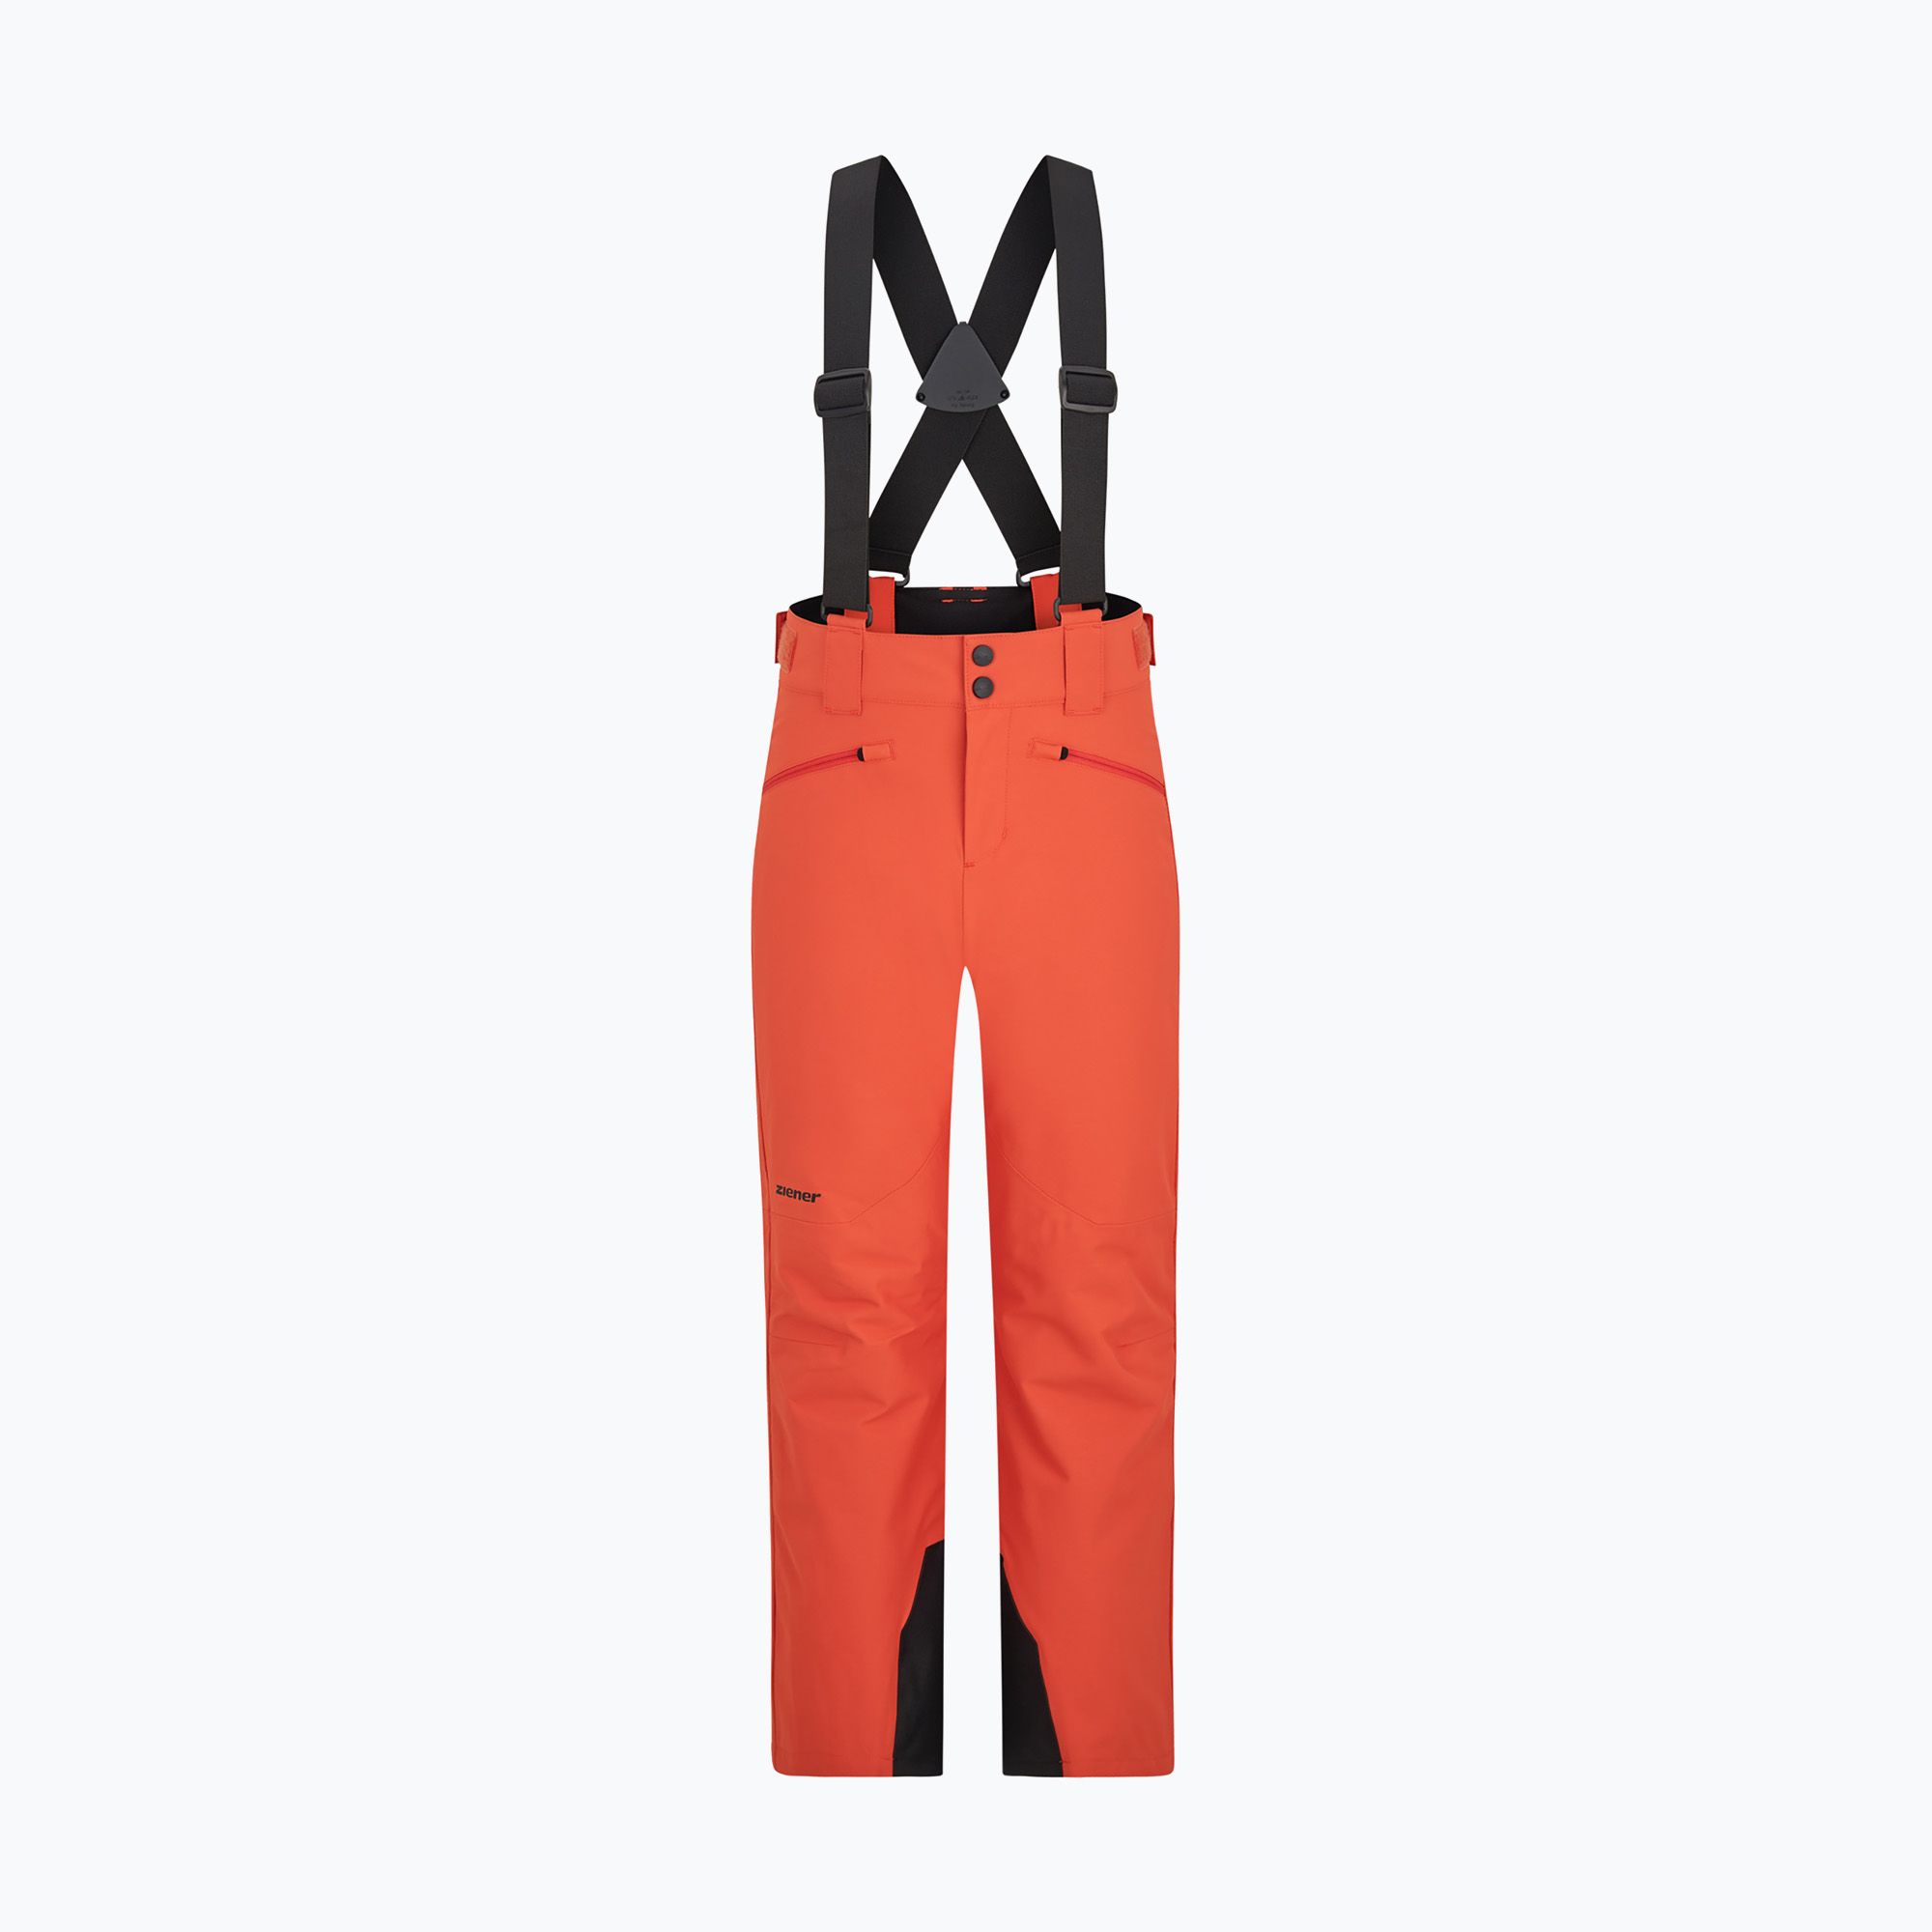 ZIENER Axi children\'s ski trousers orange burnt